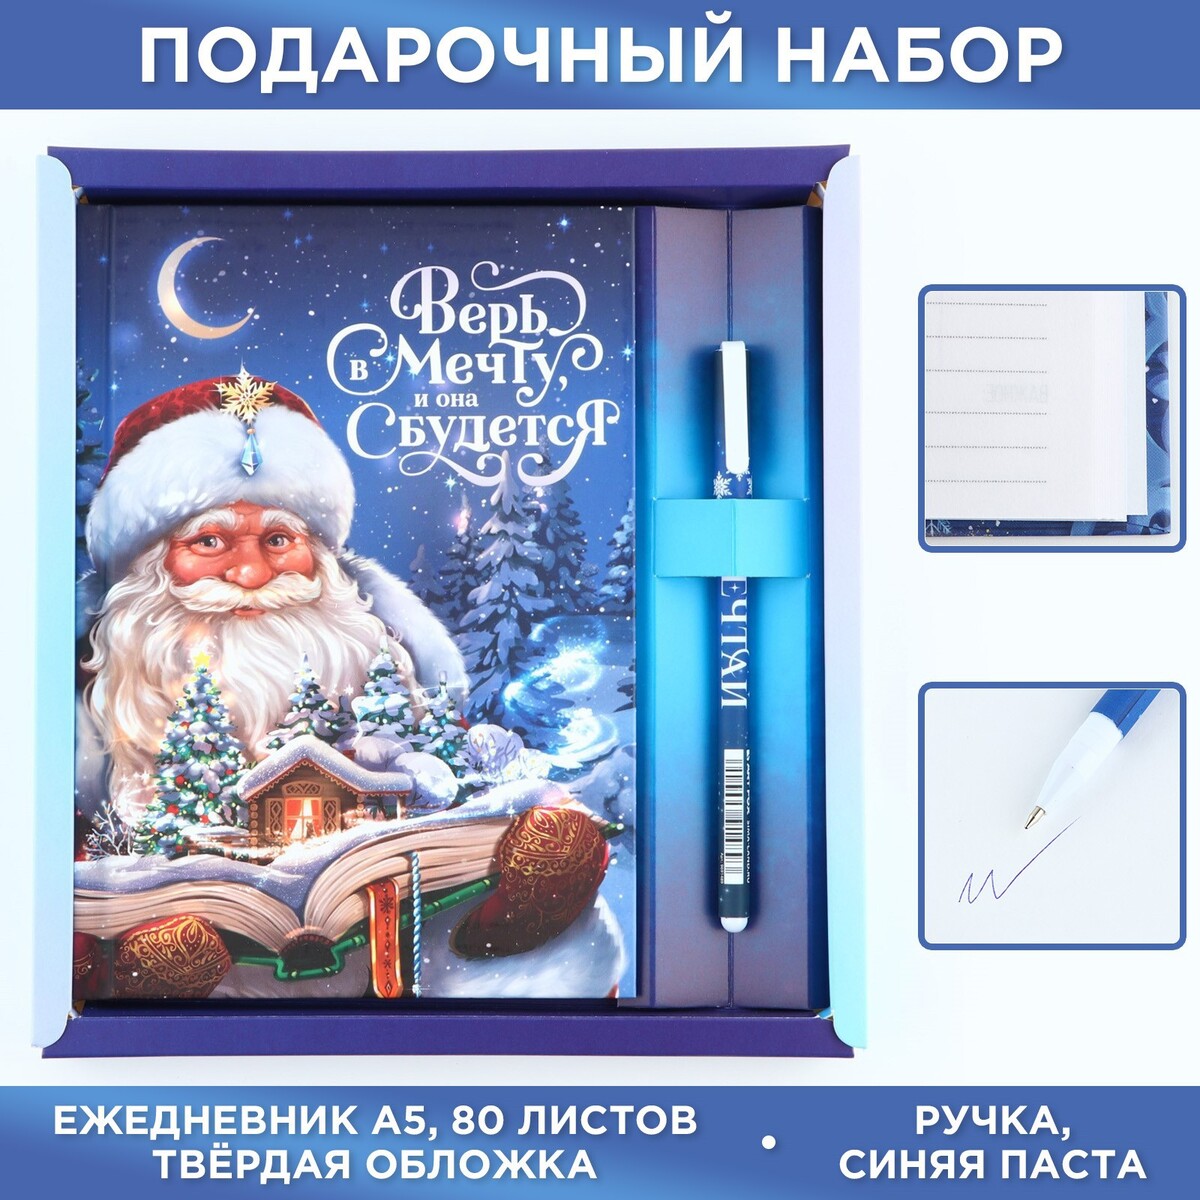 Подарочный новогодний набор ежедневник а5, 80 листов и ручка